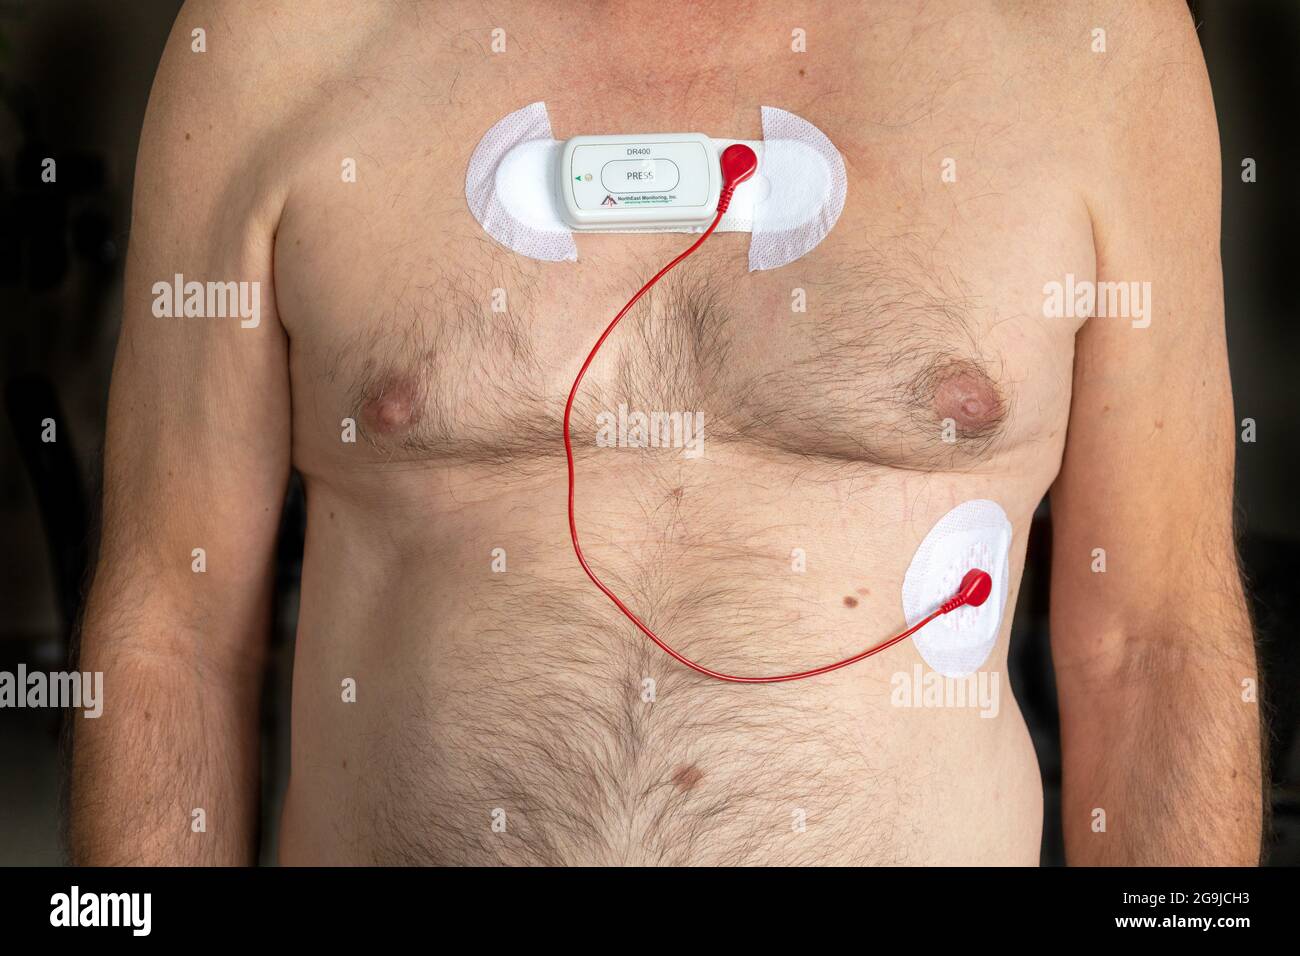 Ein Holter-Herzmonitor, der an EINE Thorax kaukasischer männlicher Patienten angeschlossen ist, um die elektrische Aktivität des Herzens bis zu 72 Stunden lang aufzuzeichnen, misst die Stockfoto